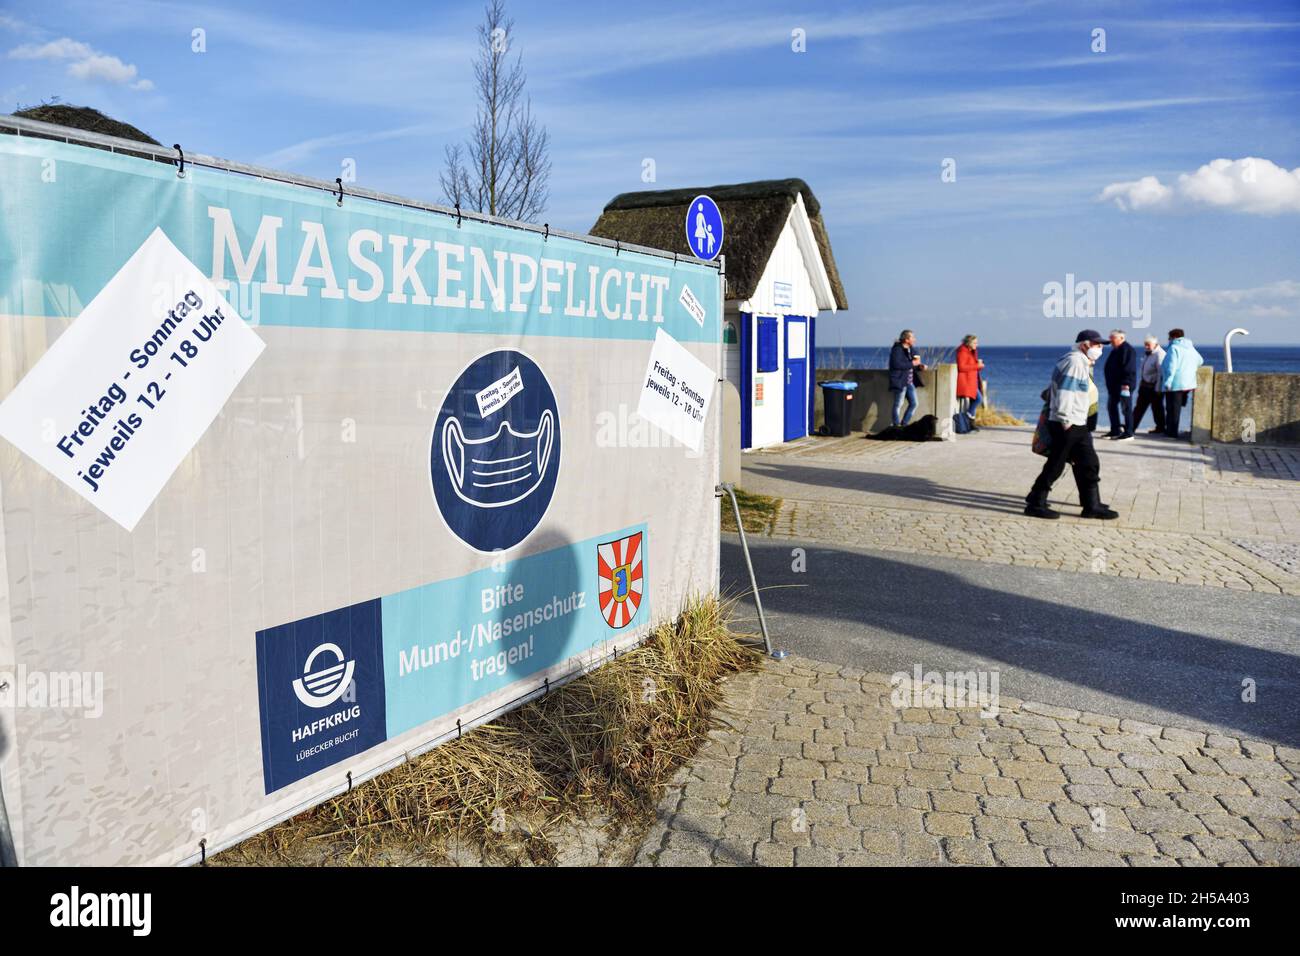 Maskenpflicht-Schild an der Strandpromenade in Haffkrug, Scharbeutz, Schleswig-Holstein, Deutschland, Europa Stock Photo